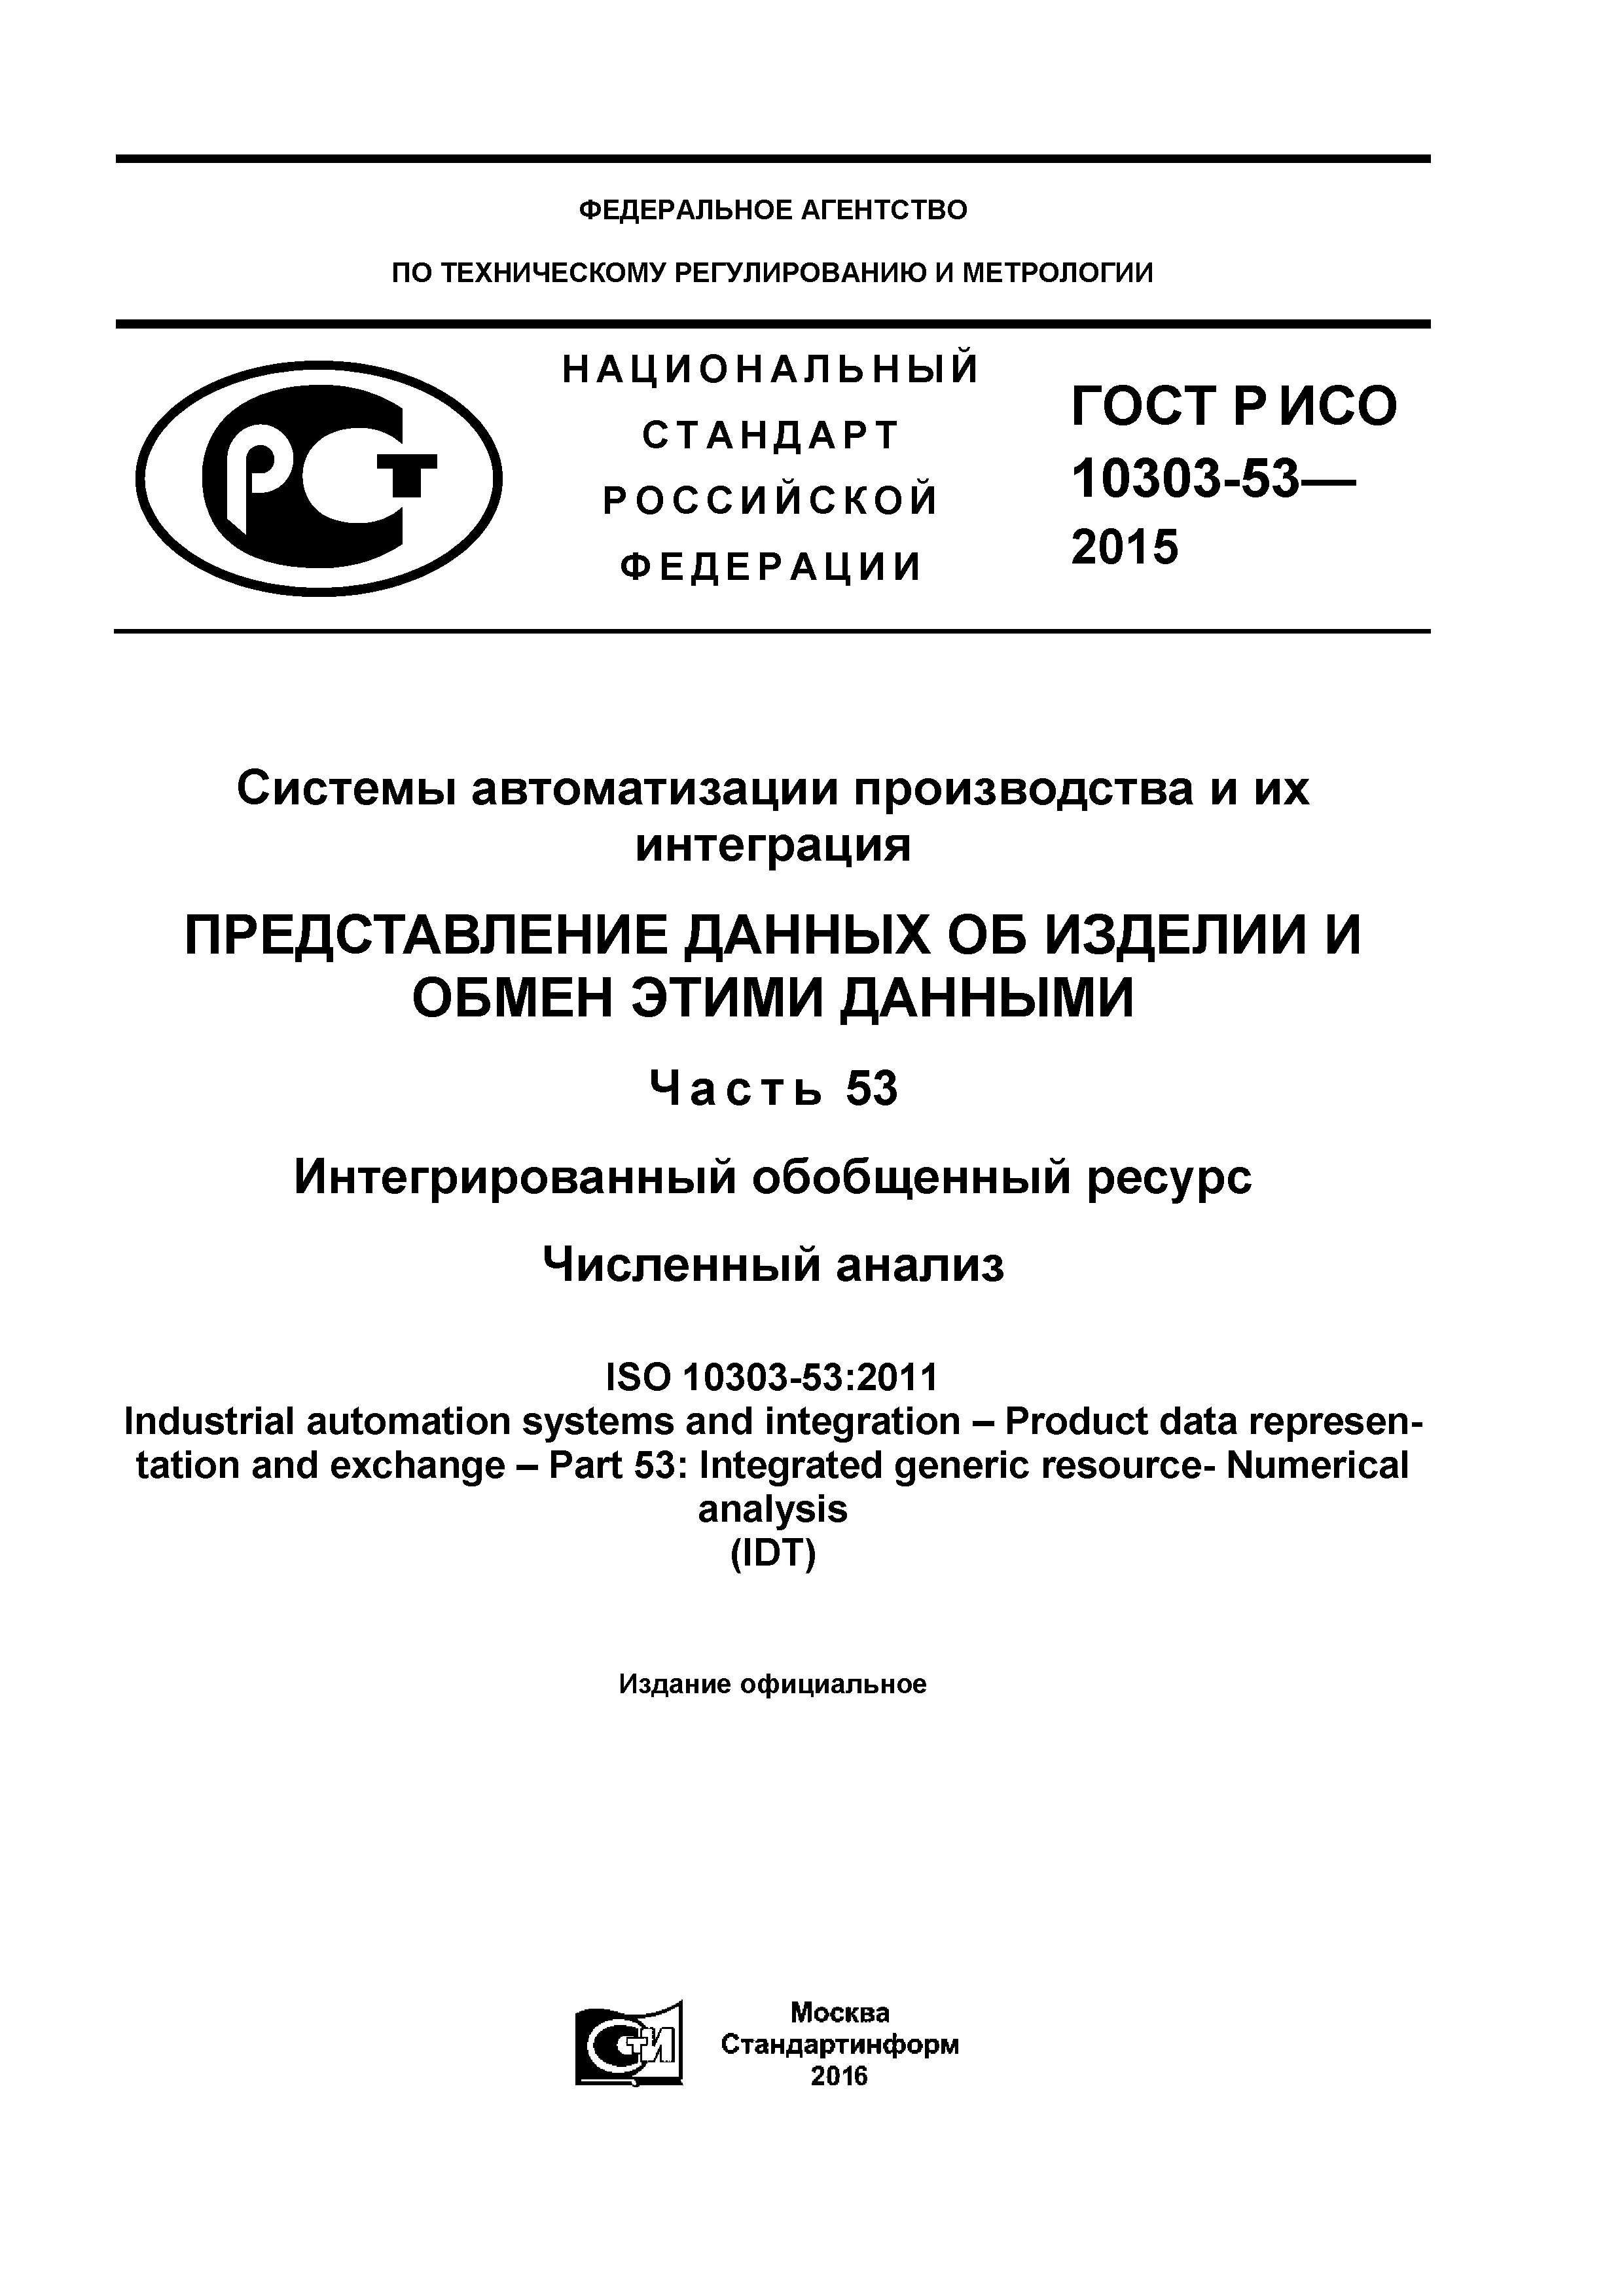 ГОСТ Р ИСО 10303-53-2015